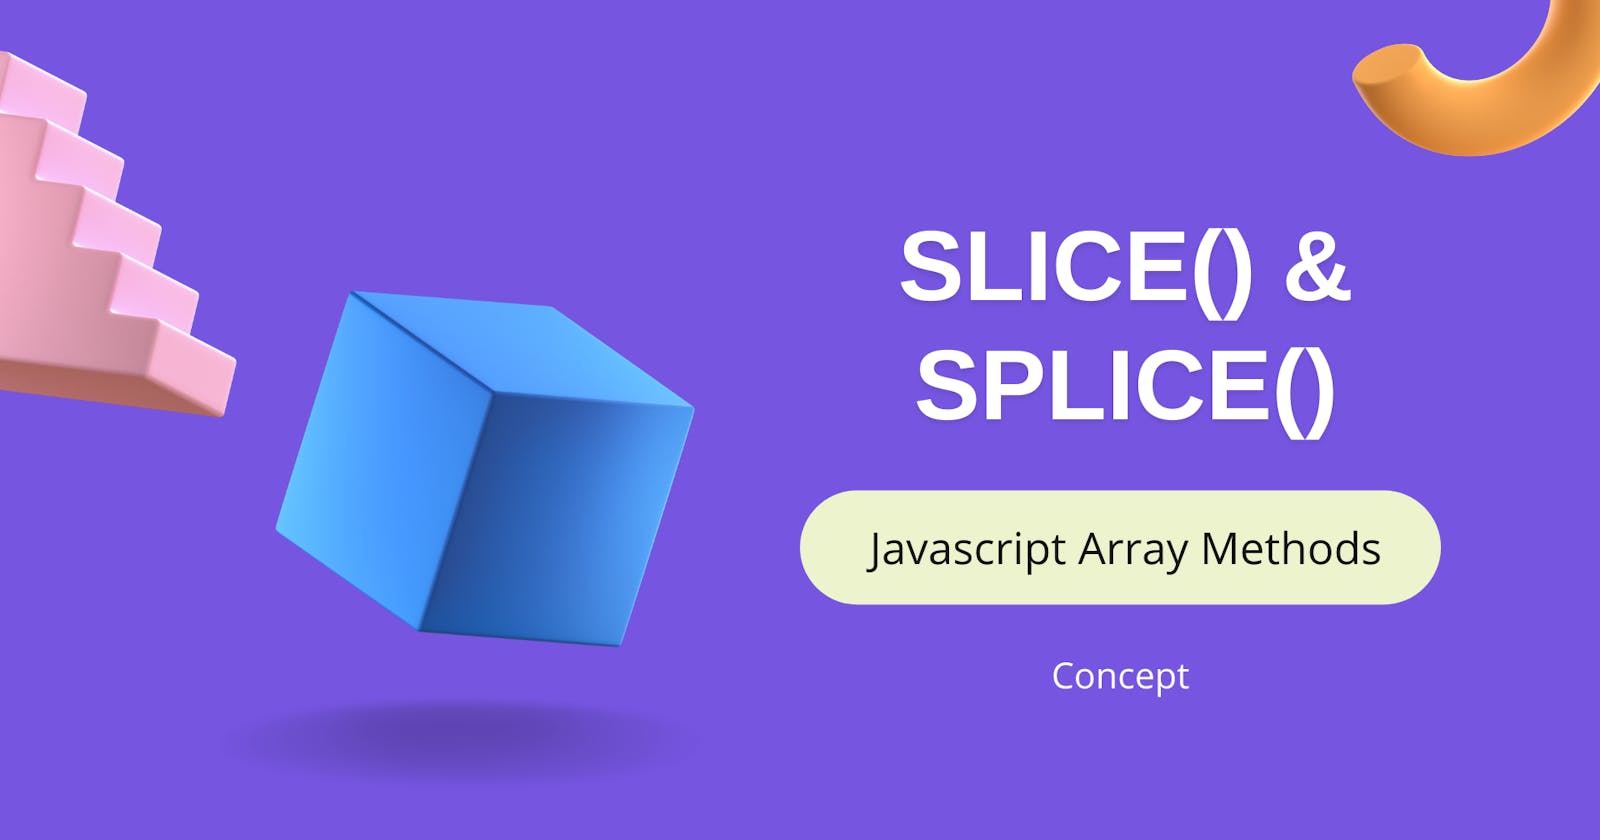 Slice() & Splice() Array methods in Javascript.